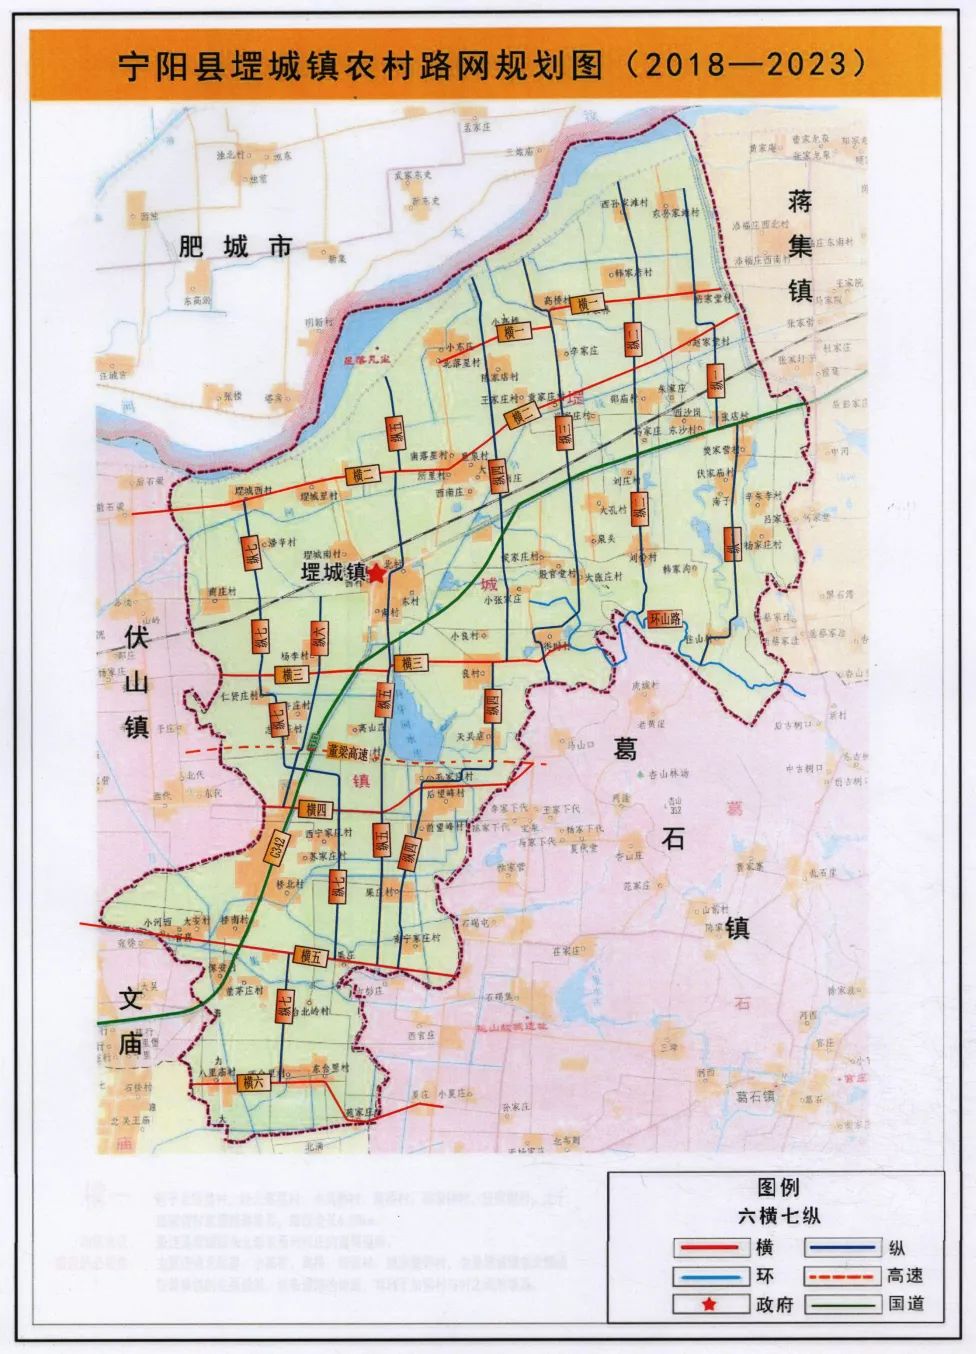 坚持规划引领,聘请专业团队,编制《宁阳县堽城镇农村路网规划(2018至